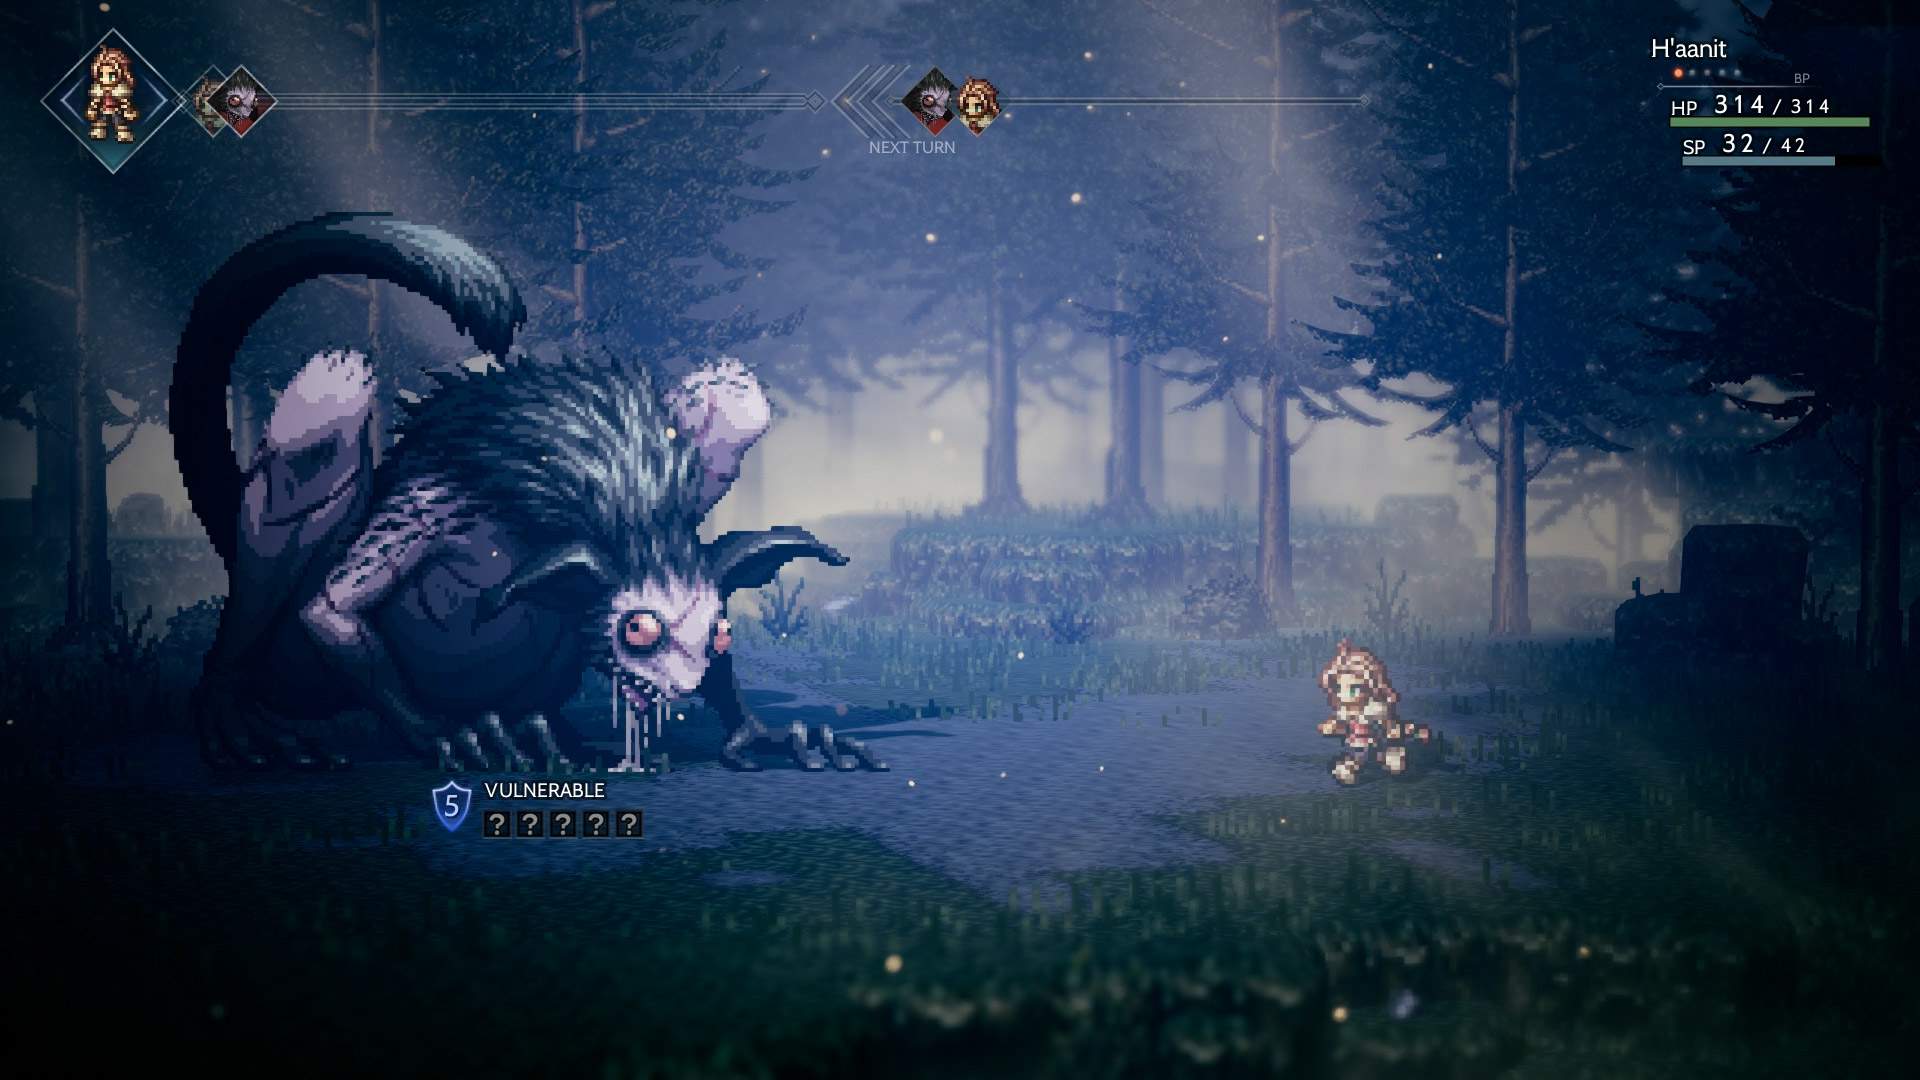 Captura de tela do combate: H'aanit lutando contra um grande monstro em combate por turnos em uma floresta.